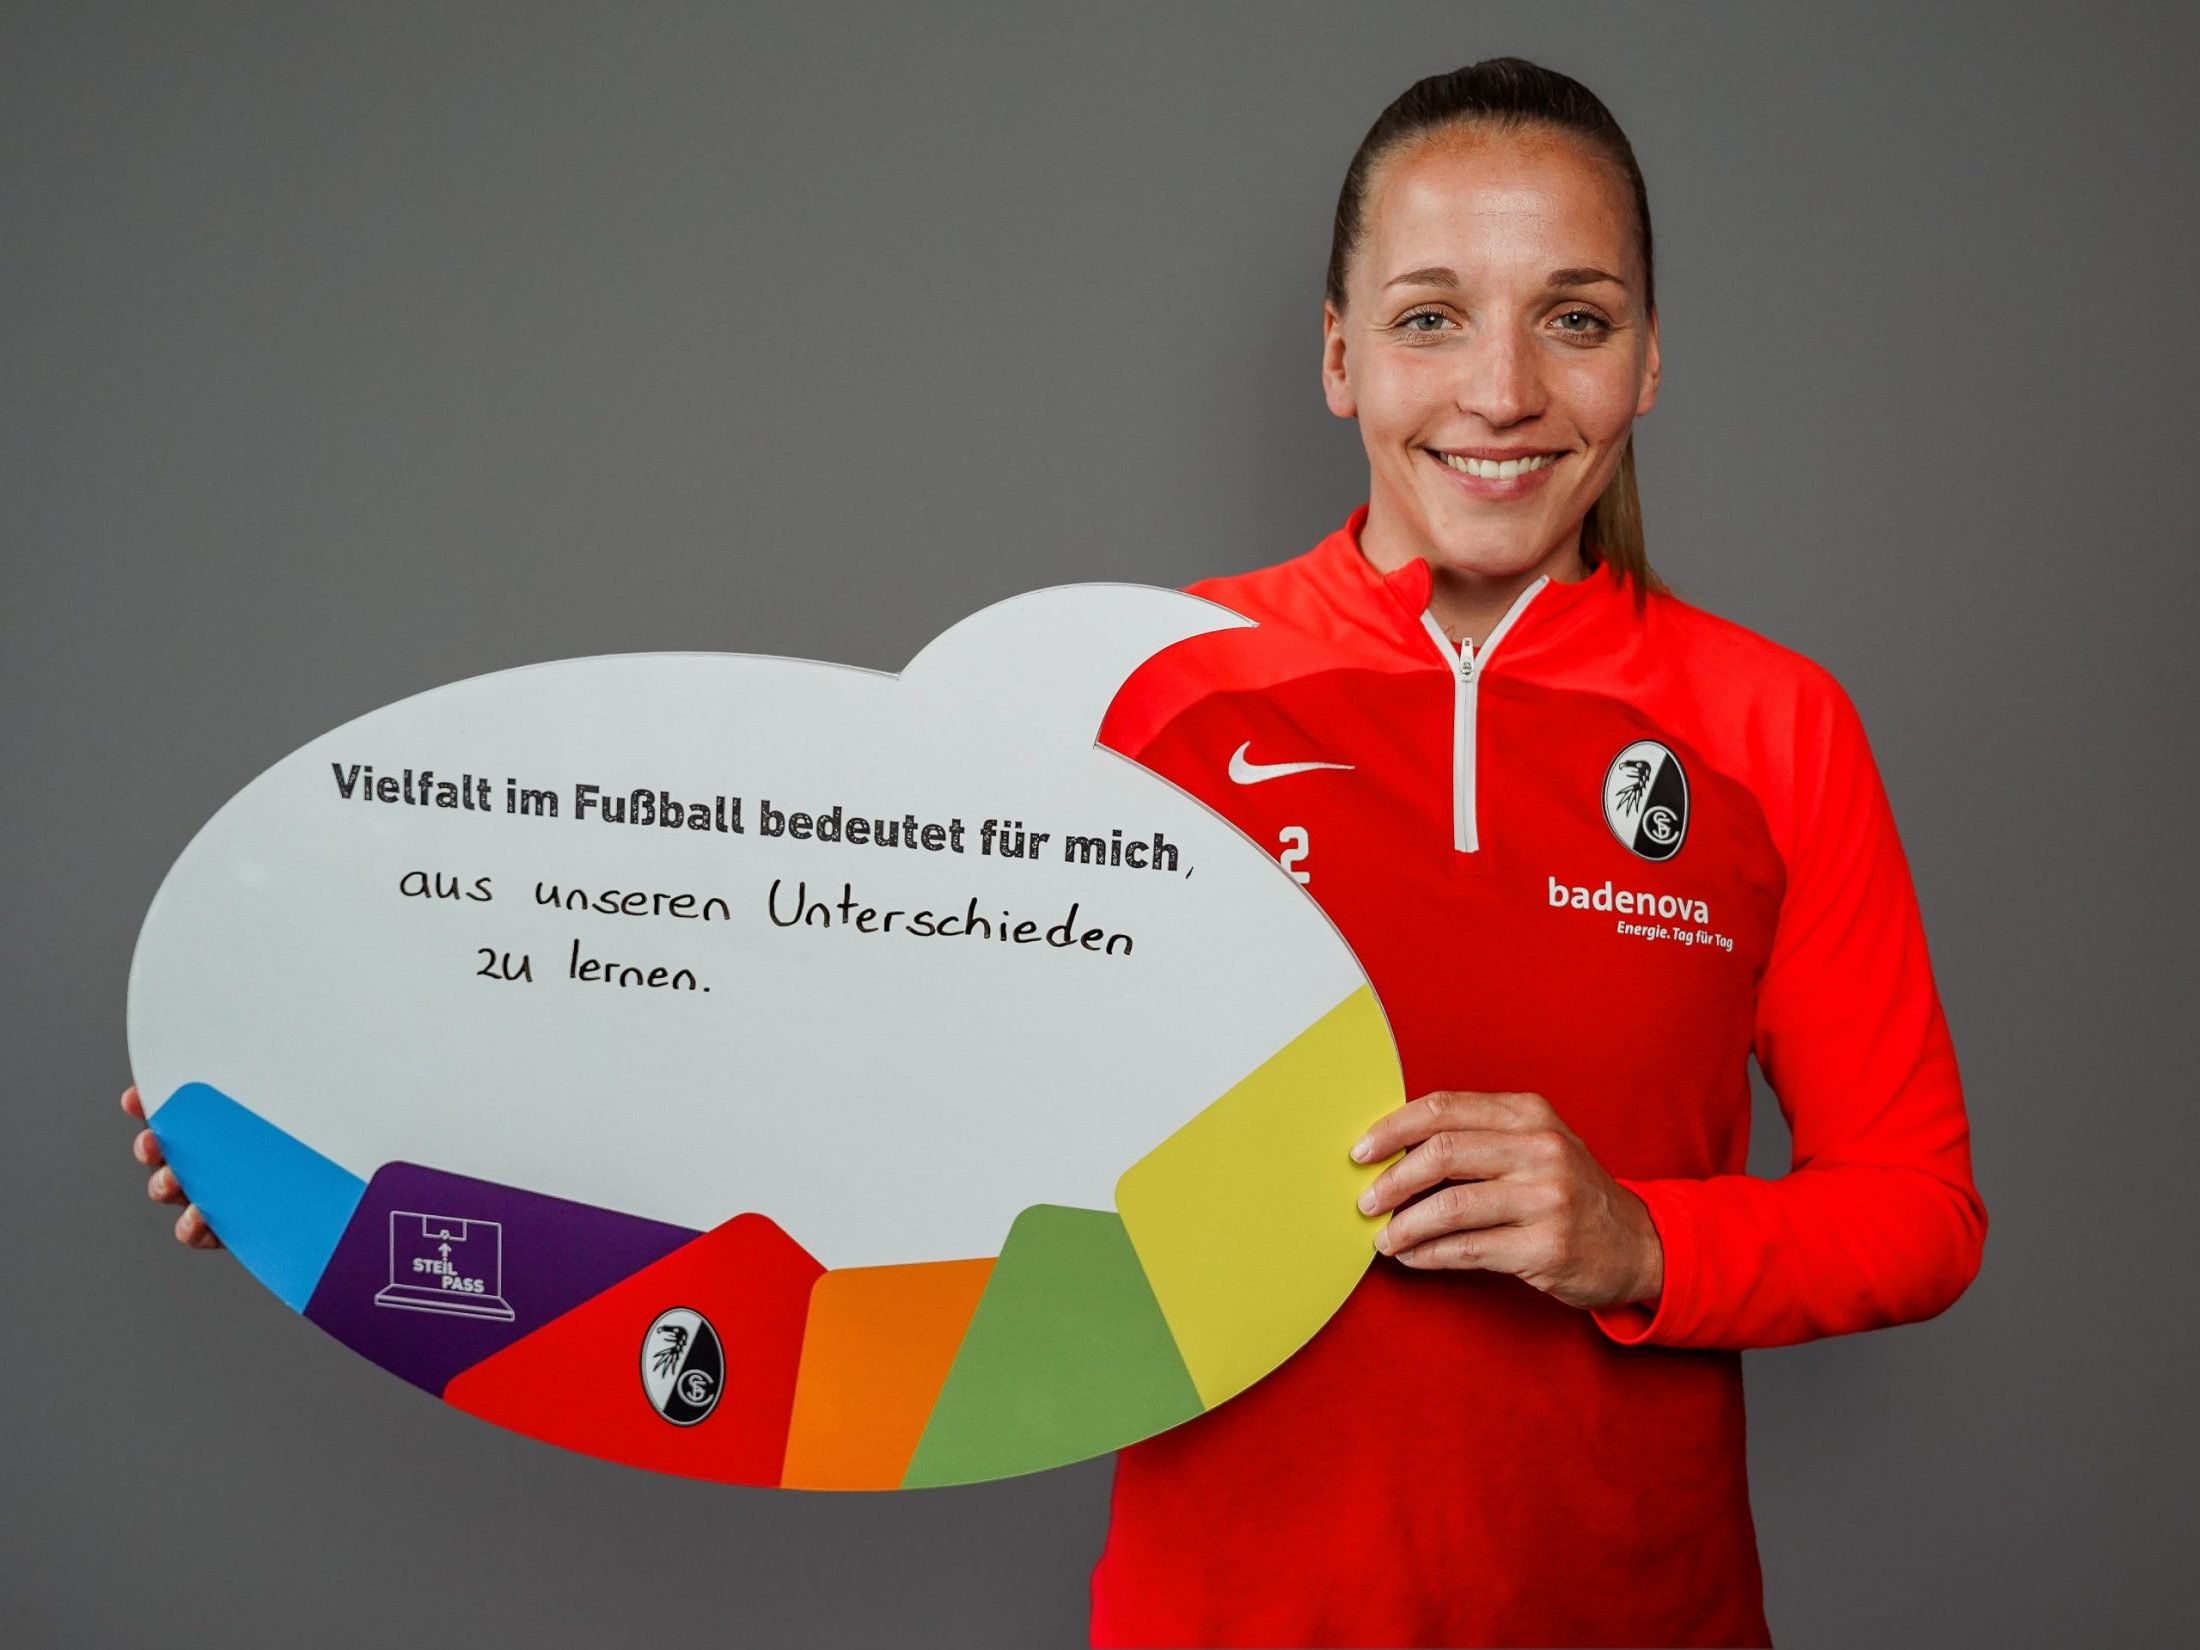 Weiße, weiblich gelesene Person mit einer SC Freiburg-Jacke hält eine Sprechblasenschild hoch. "Vielfalt im Fußball bedeutet für mich, aus unseren Unterschieden zu lernen", steht darauf geschrieben.